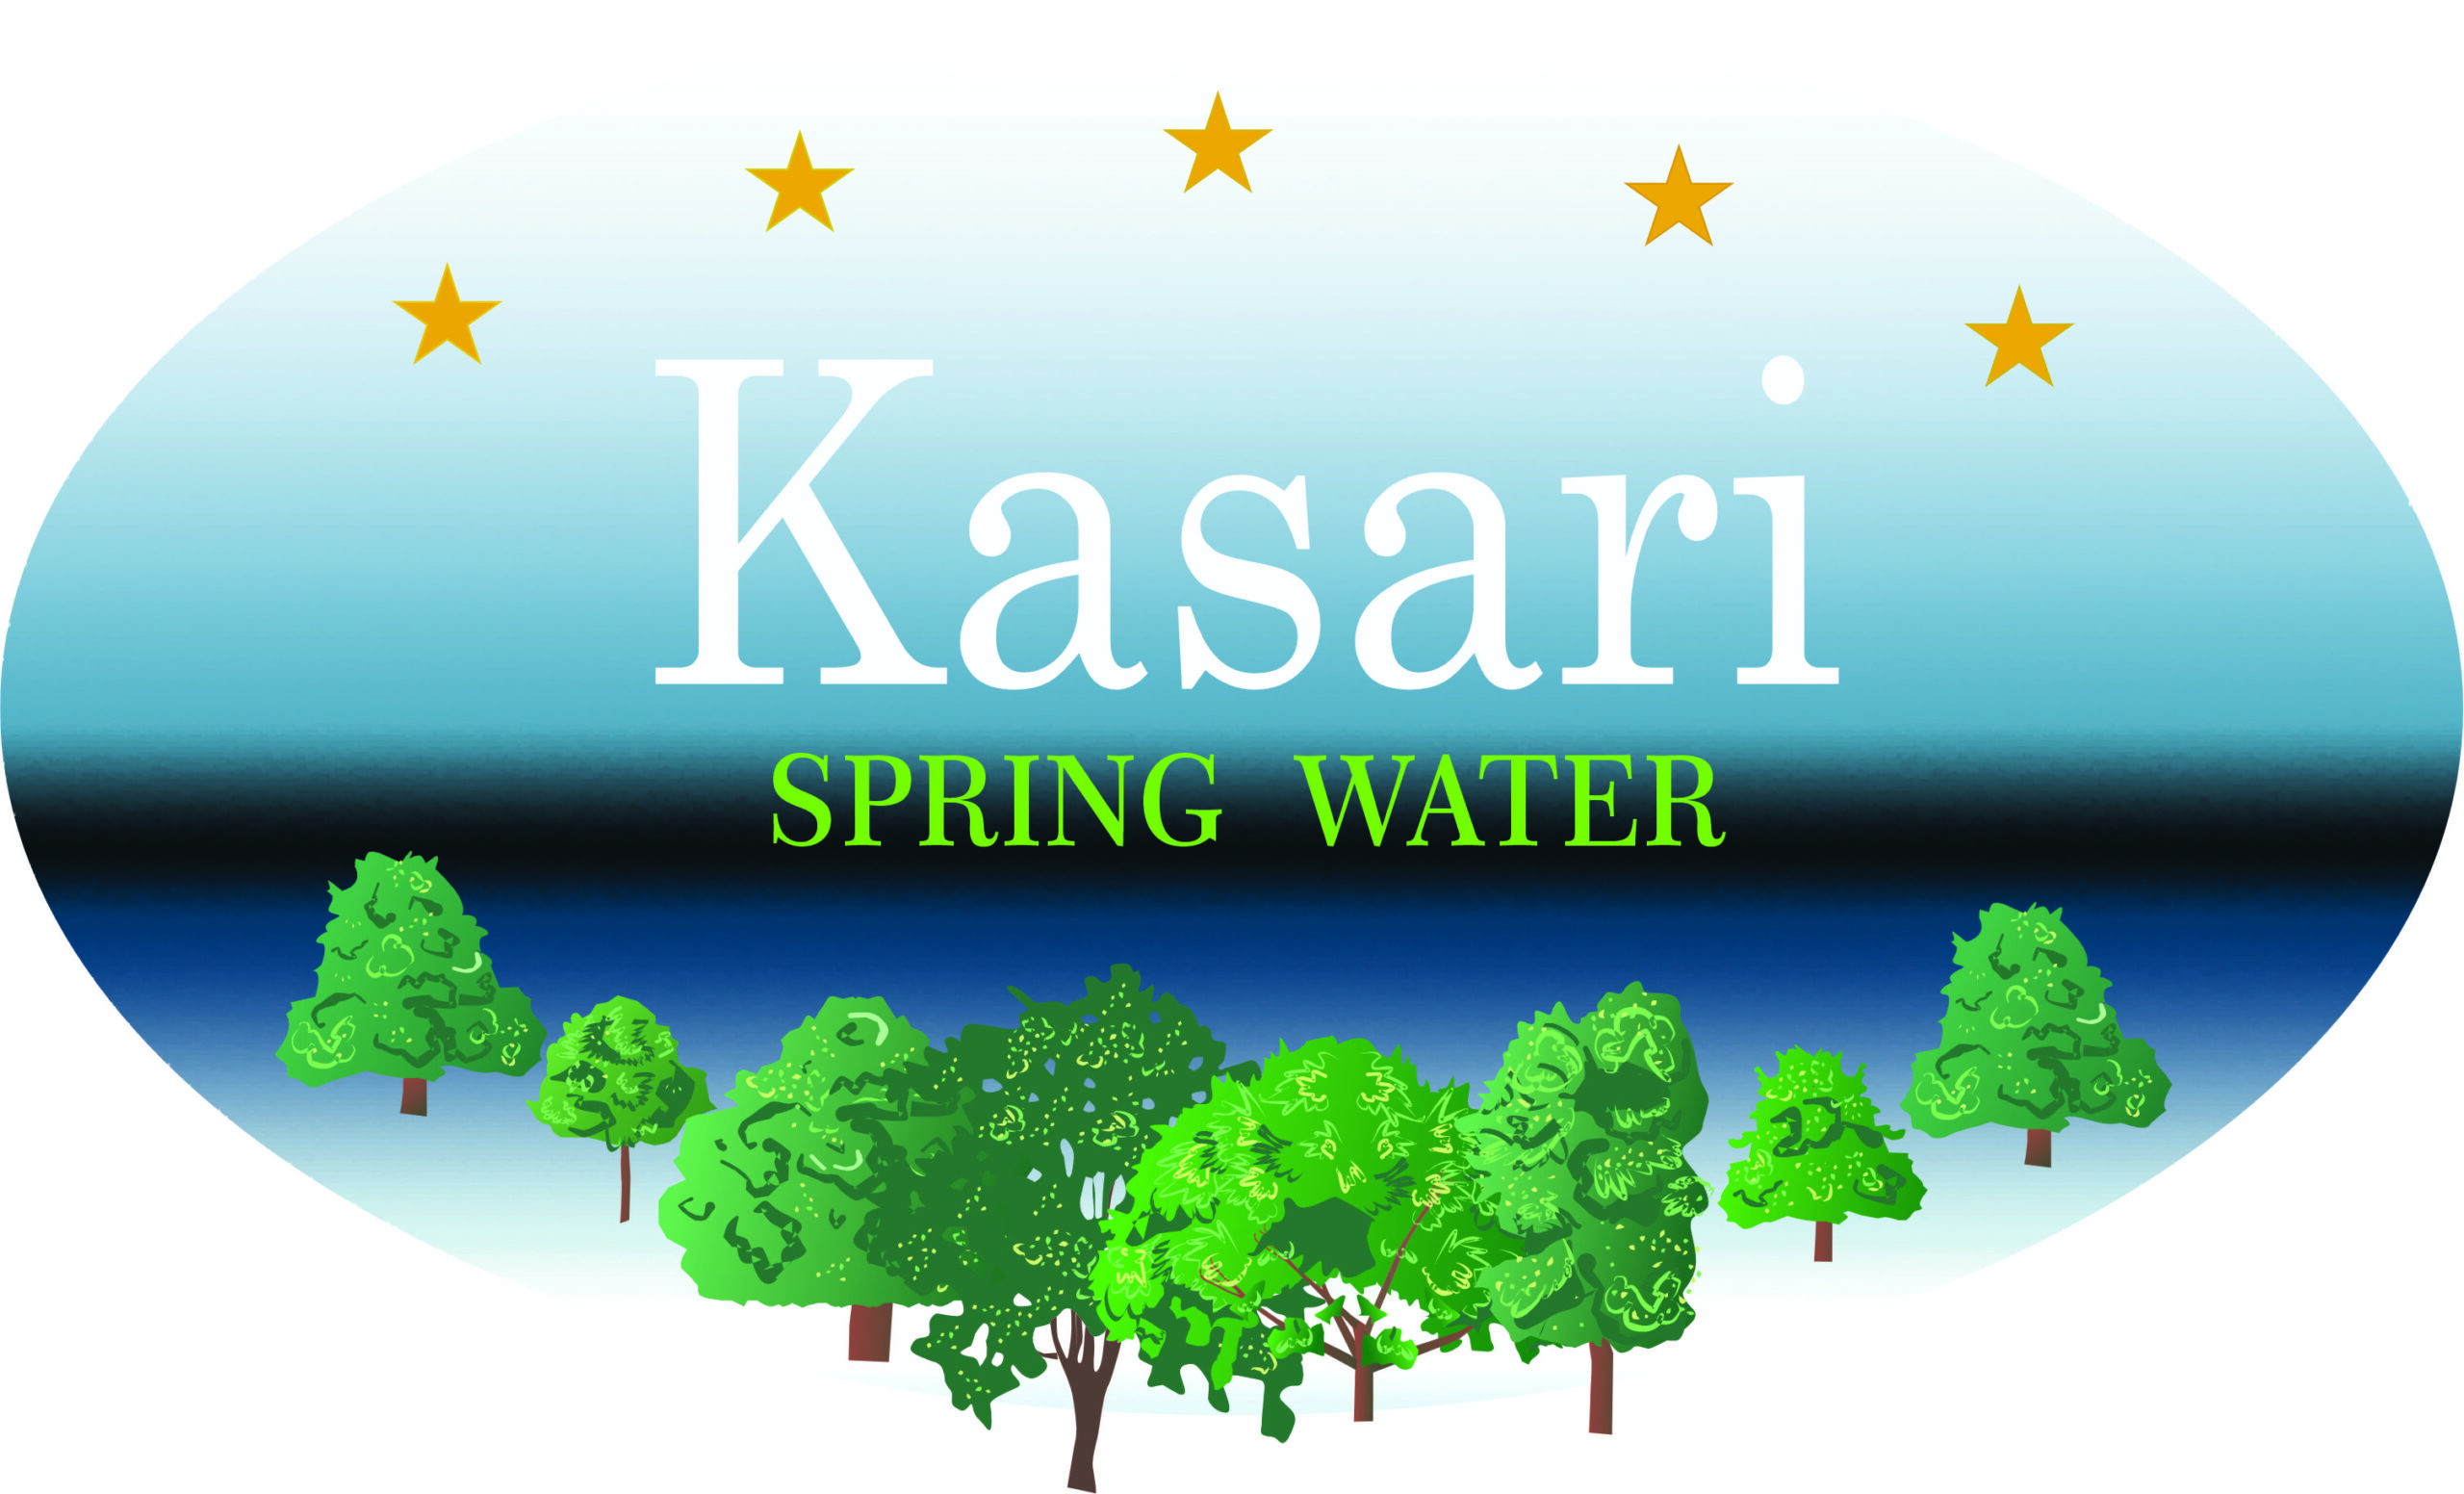 Kasari Spring Water